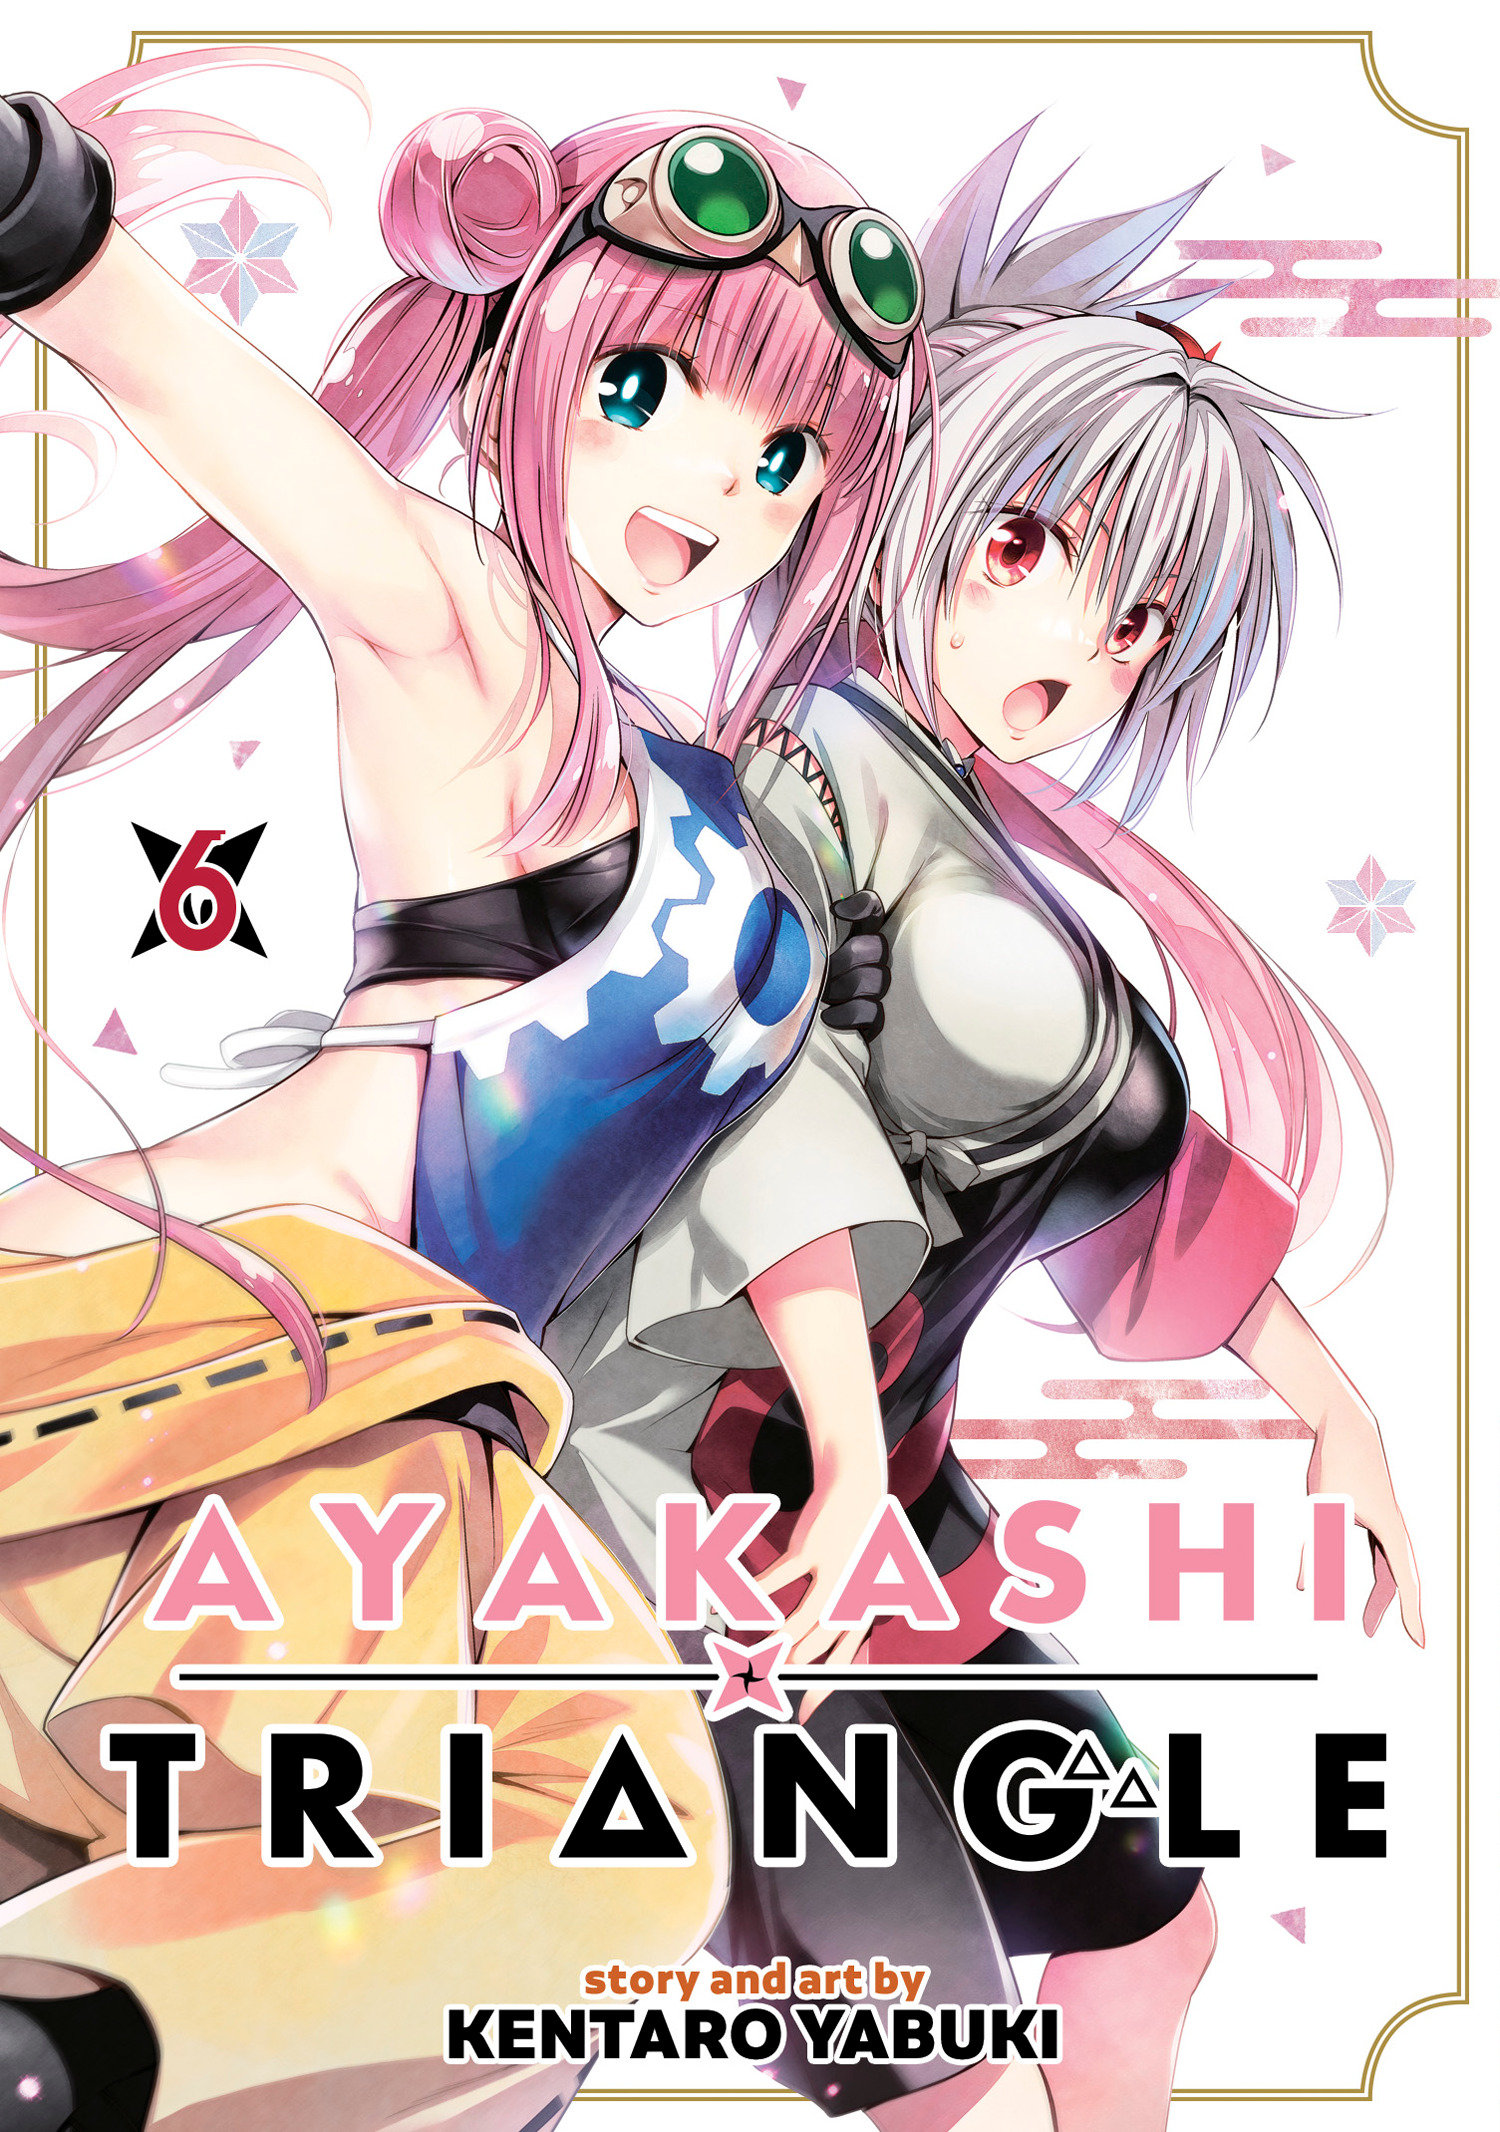 Ayakashi Triangle Manga Volume 6 (Mature)